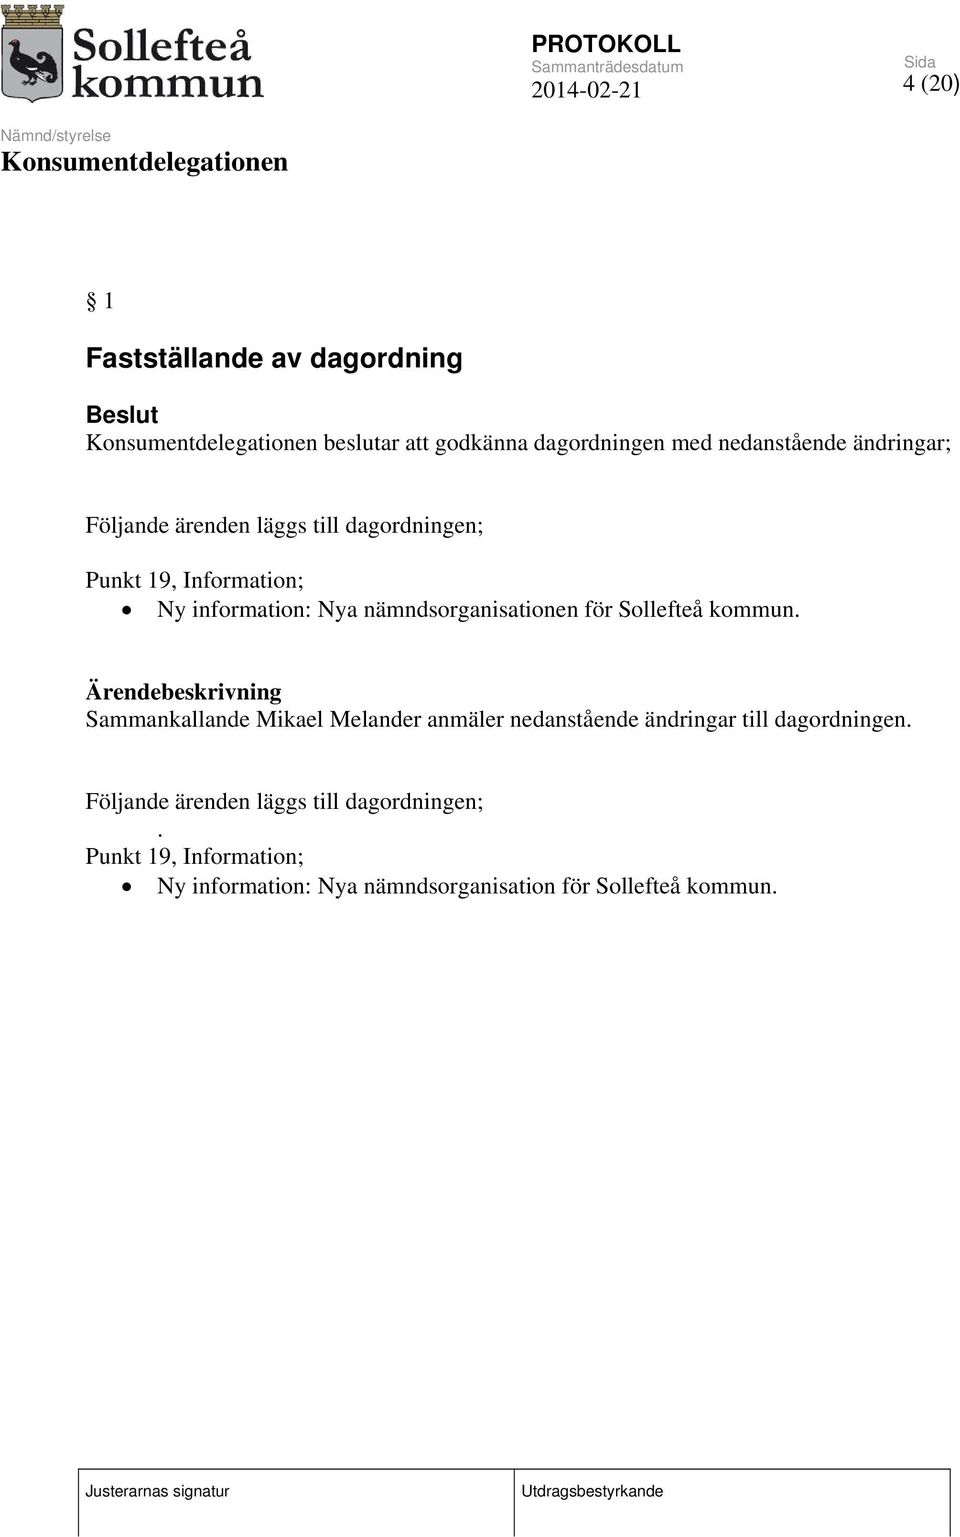 Sollefteå kommun. Sammankallande Mikael Melander anmäler nedanstående ändringar till dagordningen.